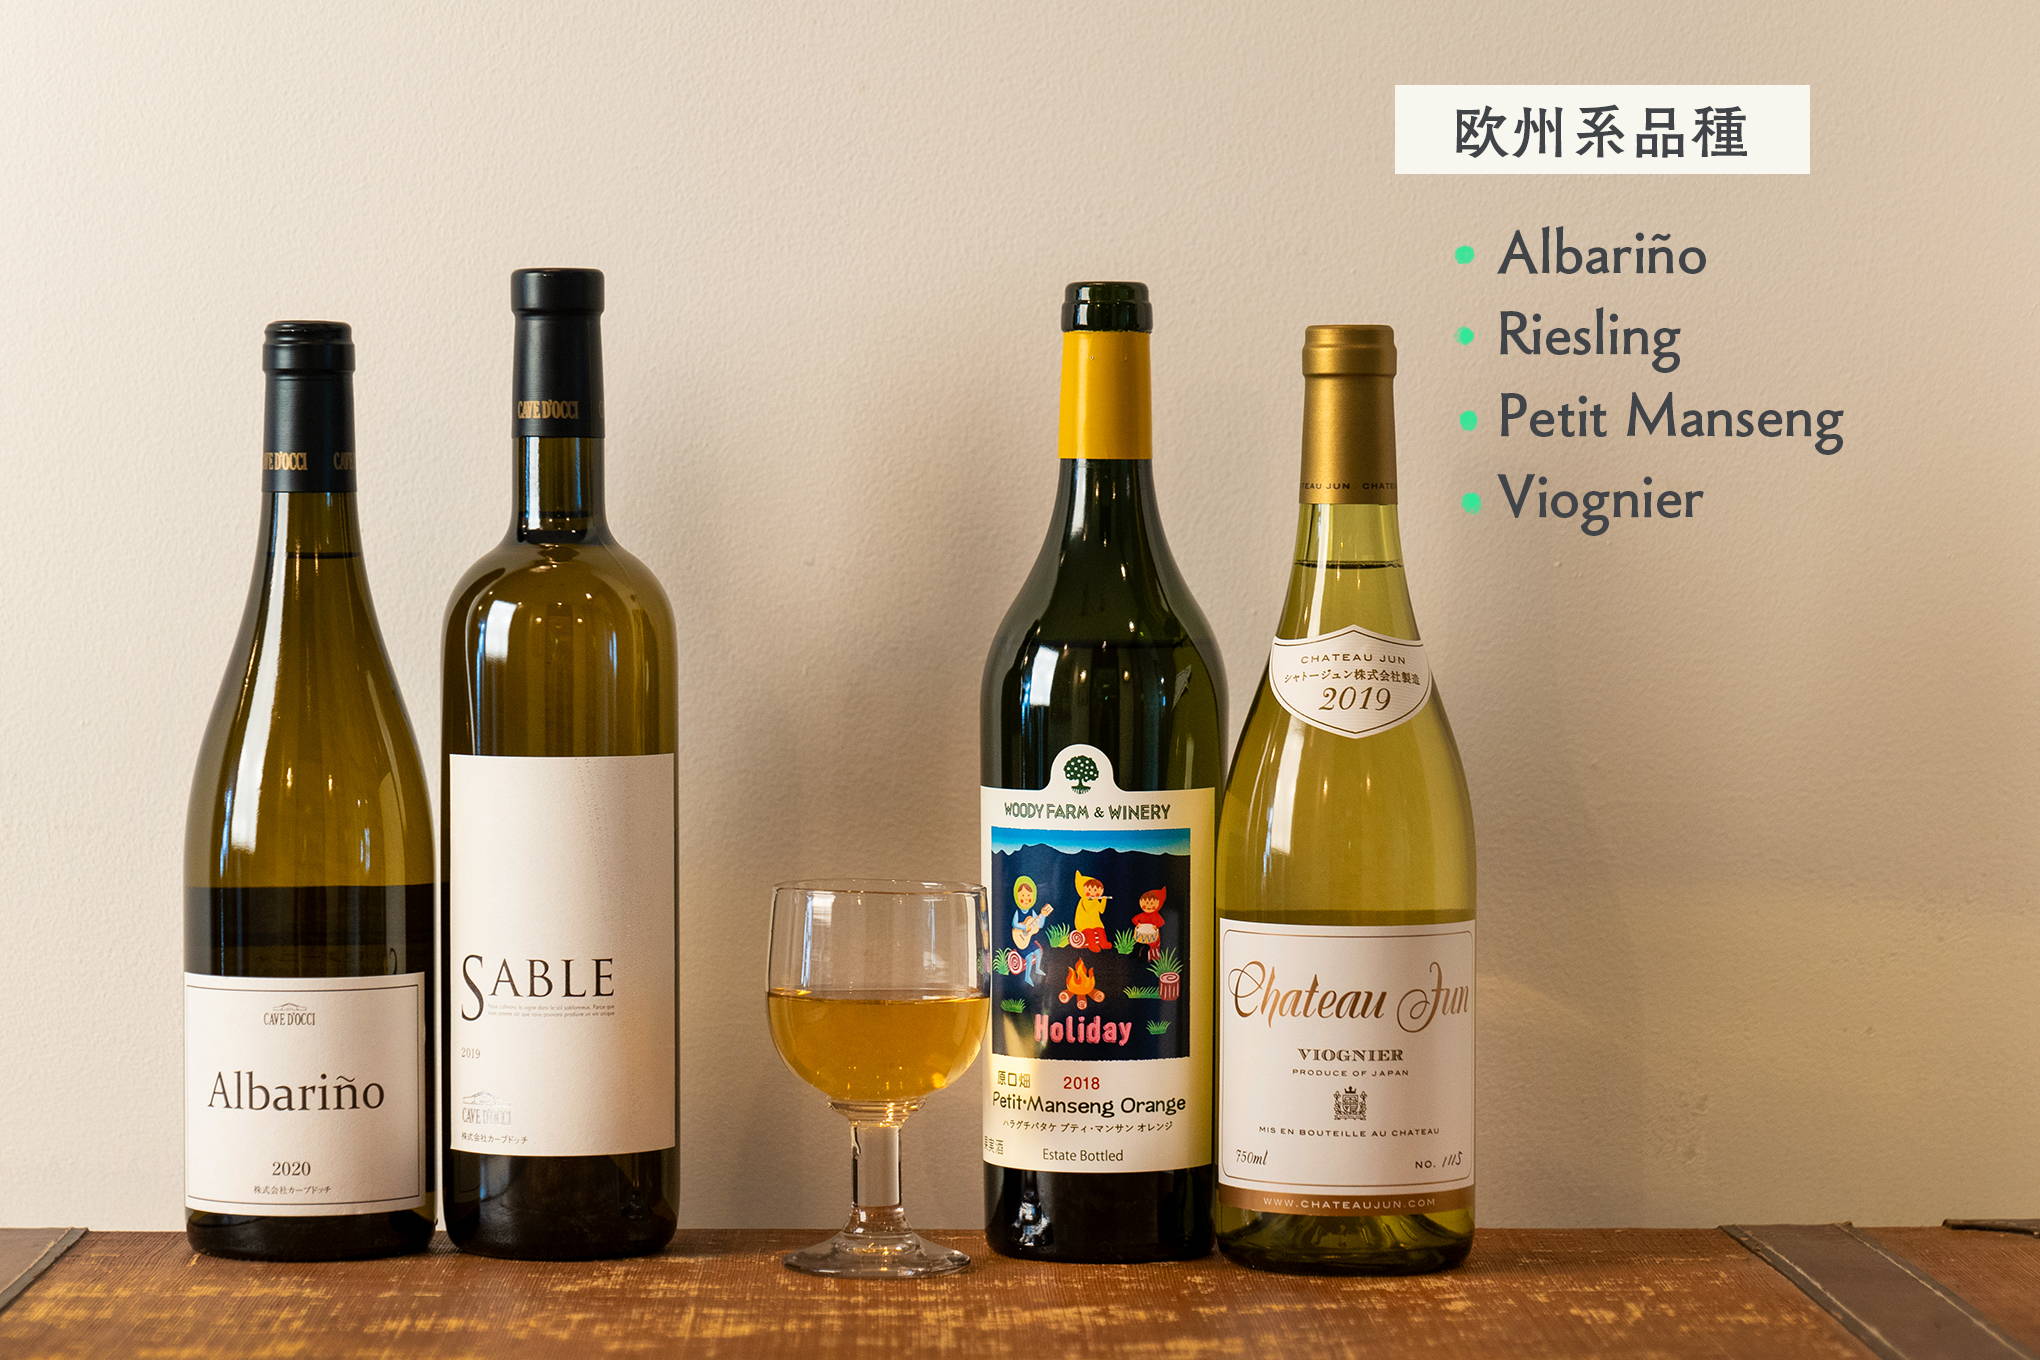 アルバリーニョ、リースリング、プティ・マンサン、ヴィオニエなど。欧州系品種の日本ワインも注目の存在！